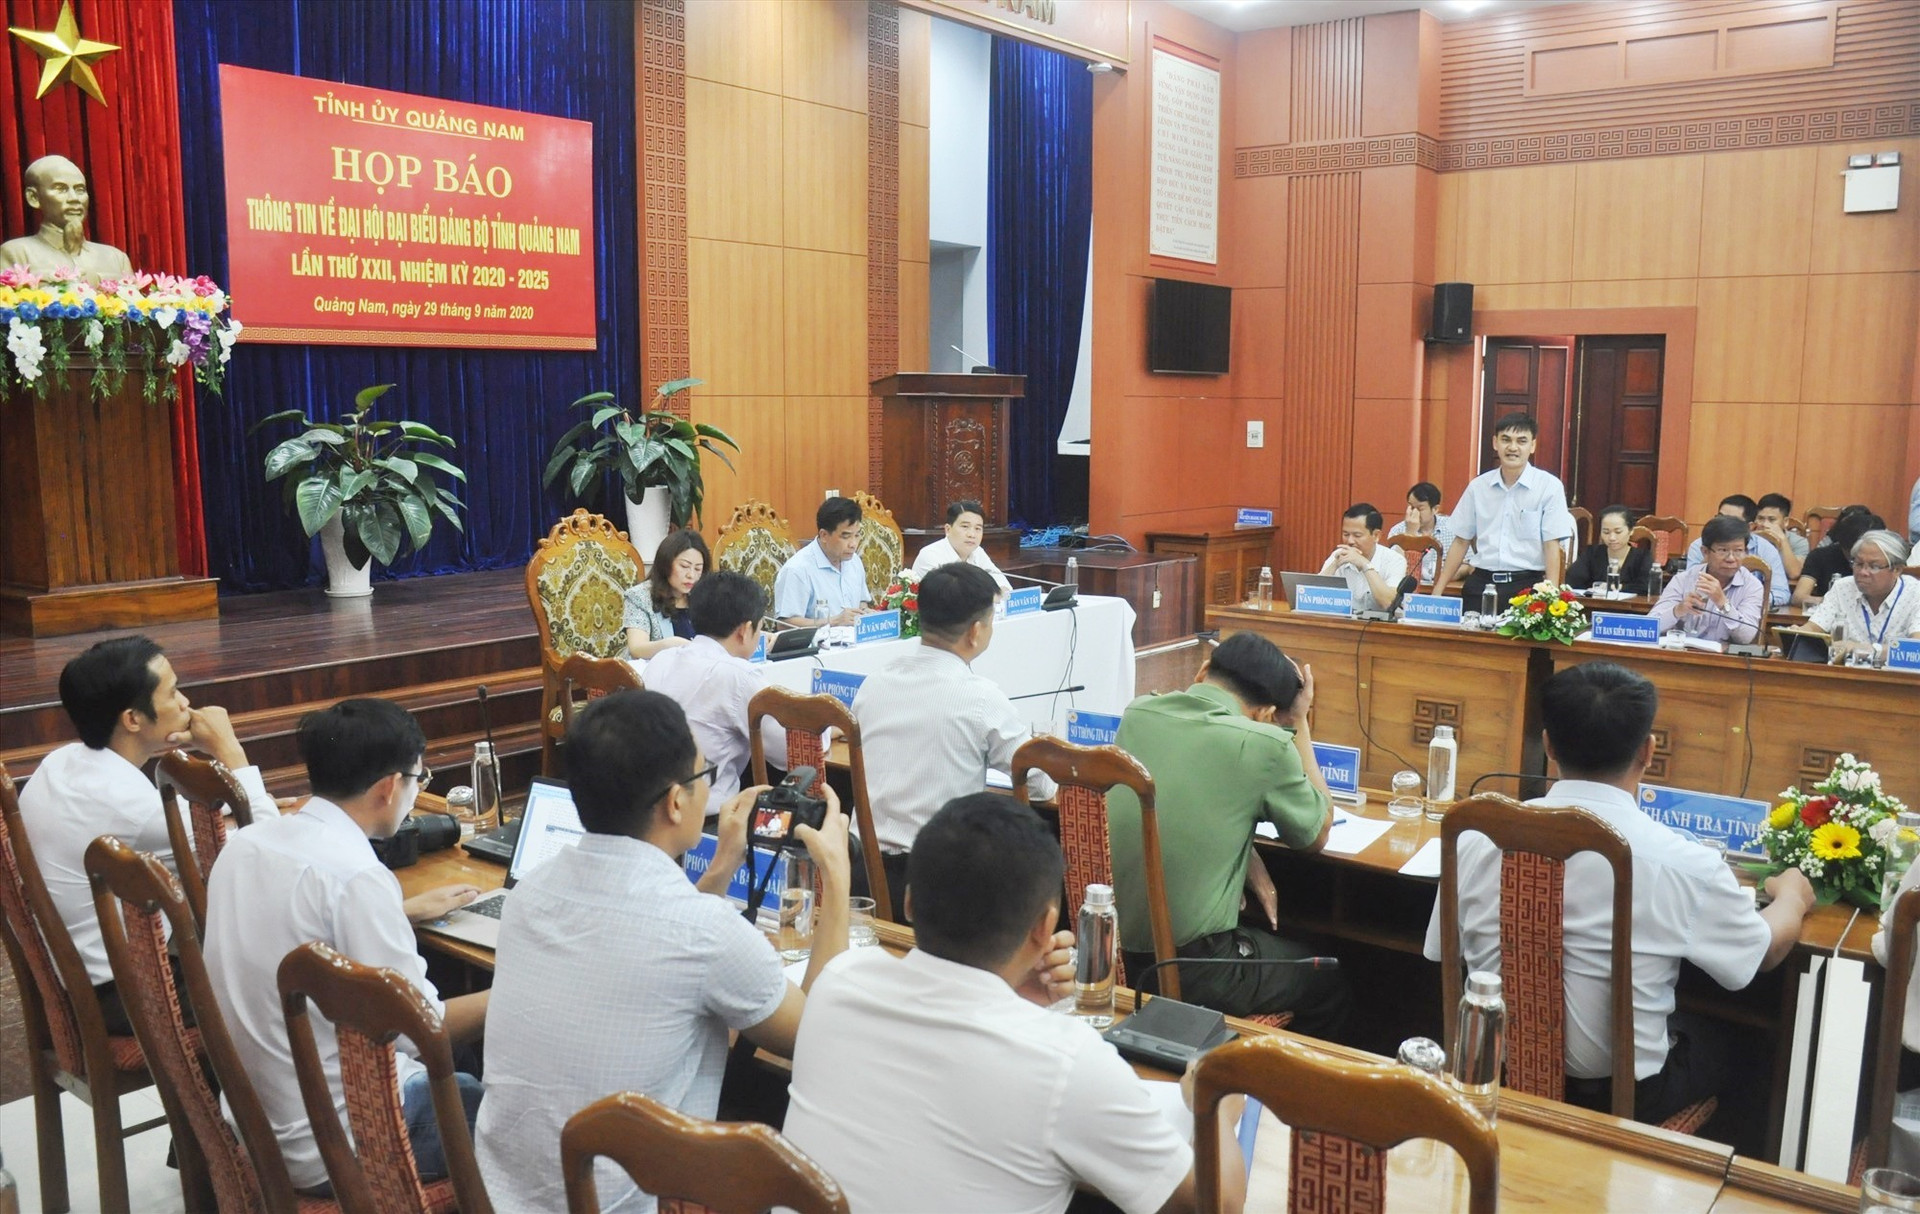 Tỉnh ủy vừa tổ chức họp báo thông tin về Đại hội đại biểu Đảng bộ tỉnh lần thứ XXII. Ảnh: N.Đ